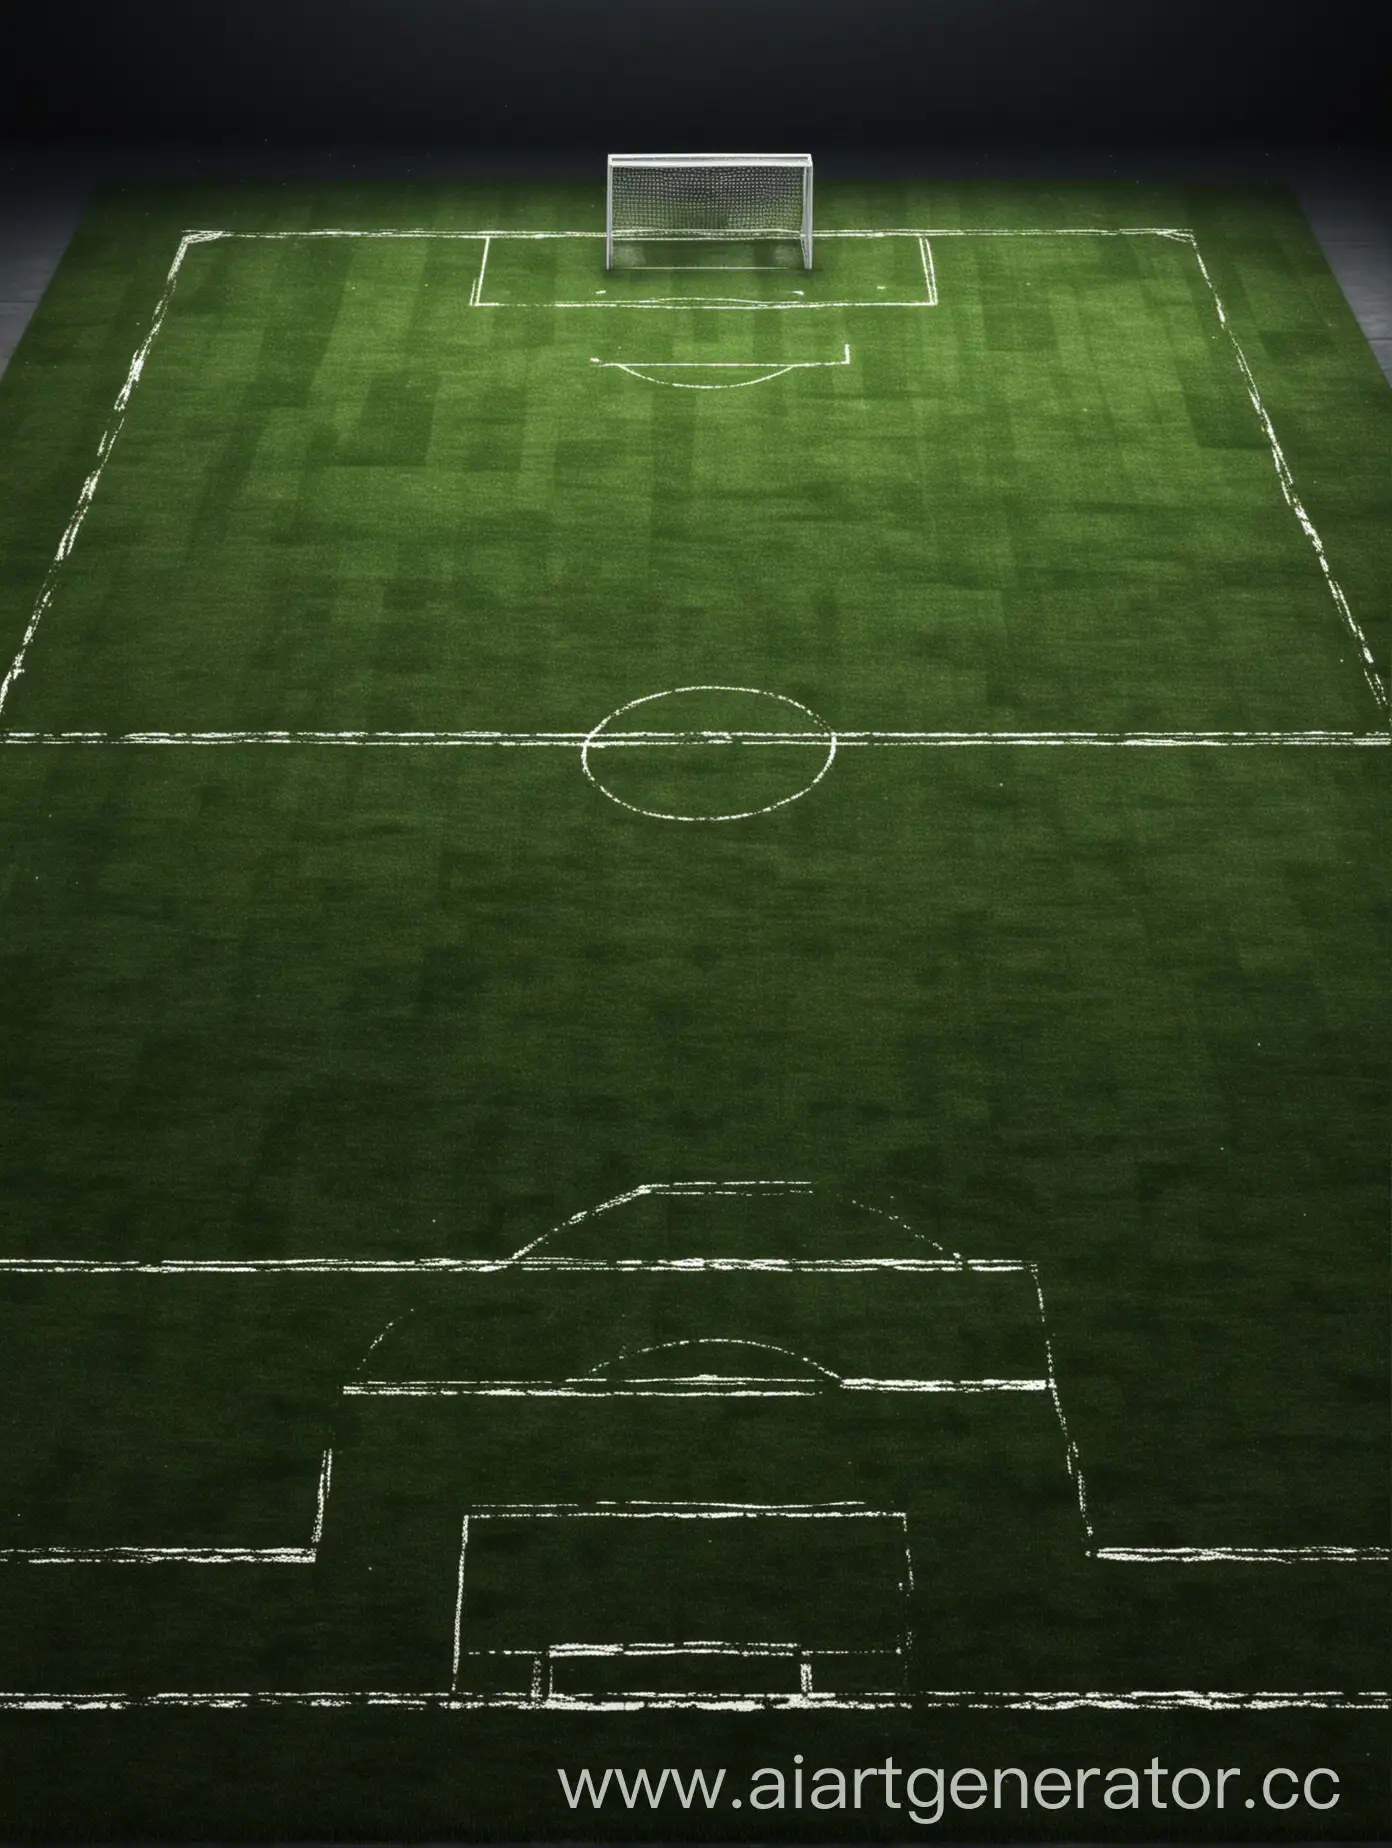 Realistic-Soccer-Field-in-Cyberpunk-Style-Dark-Colors